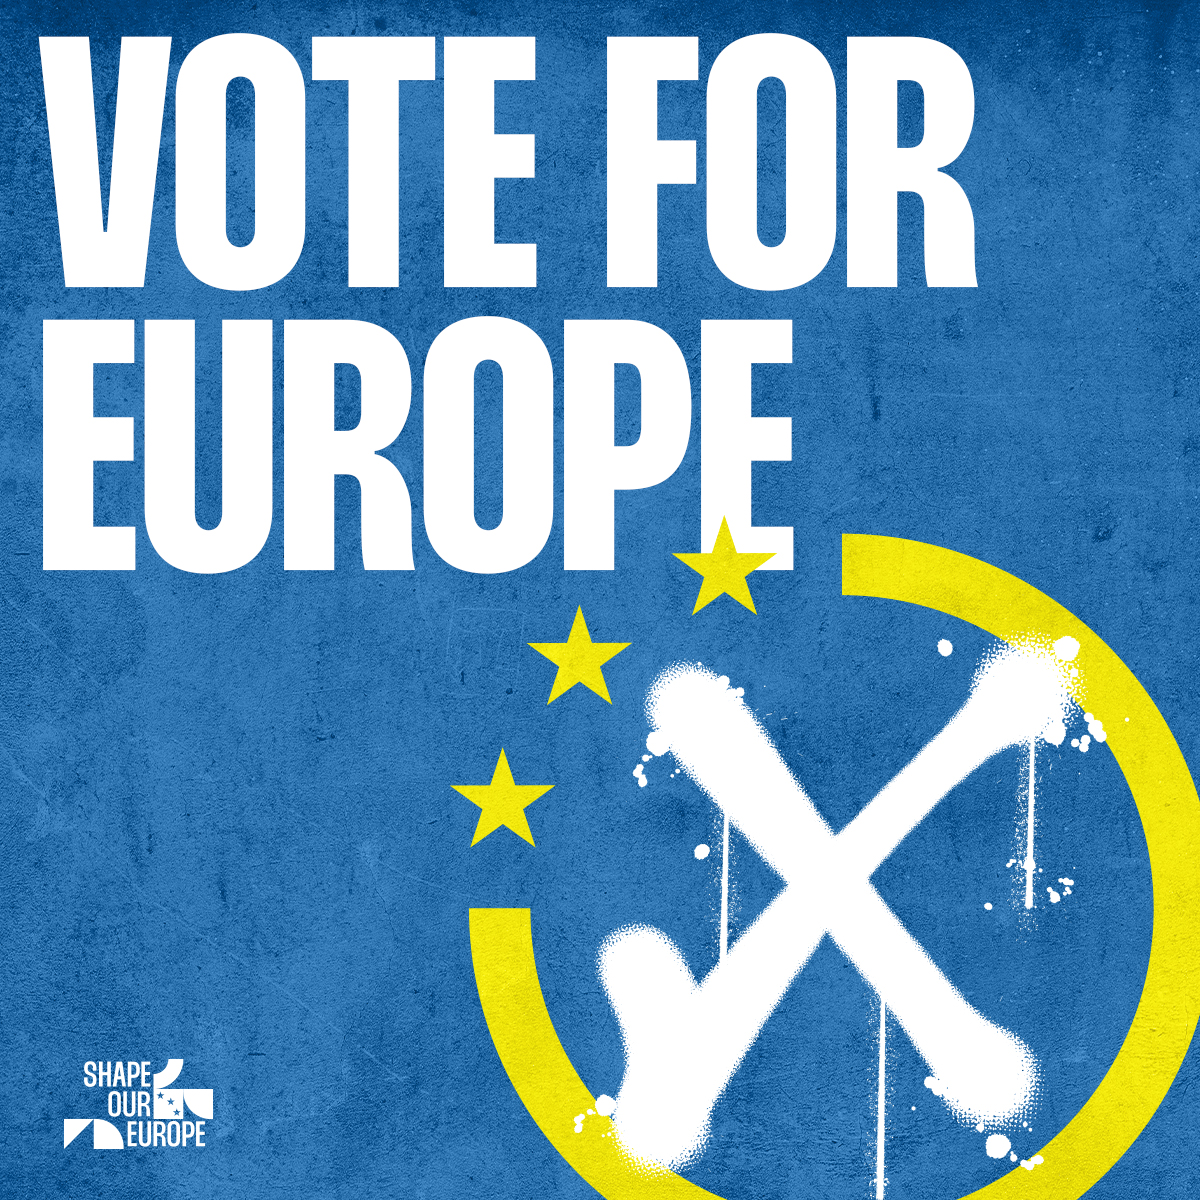 Lasst uns heute am #Europatag unsere gemeinsamen Werte & unsere Vielfalt feiern! Zudem erinnert uns dieser Tag an die bevorstehende #Europawahl am 9. Juni 2024, bei der wir gemeinsam positive Veränderungen für unseren Kontinent bewirken können. #UnserEuropaDeineWahl #EU